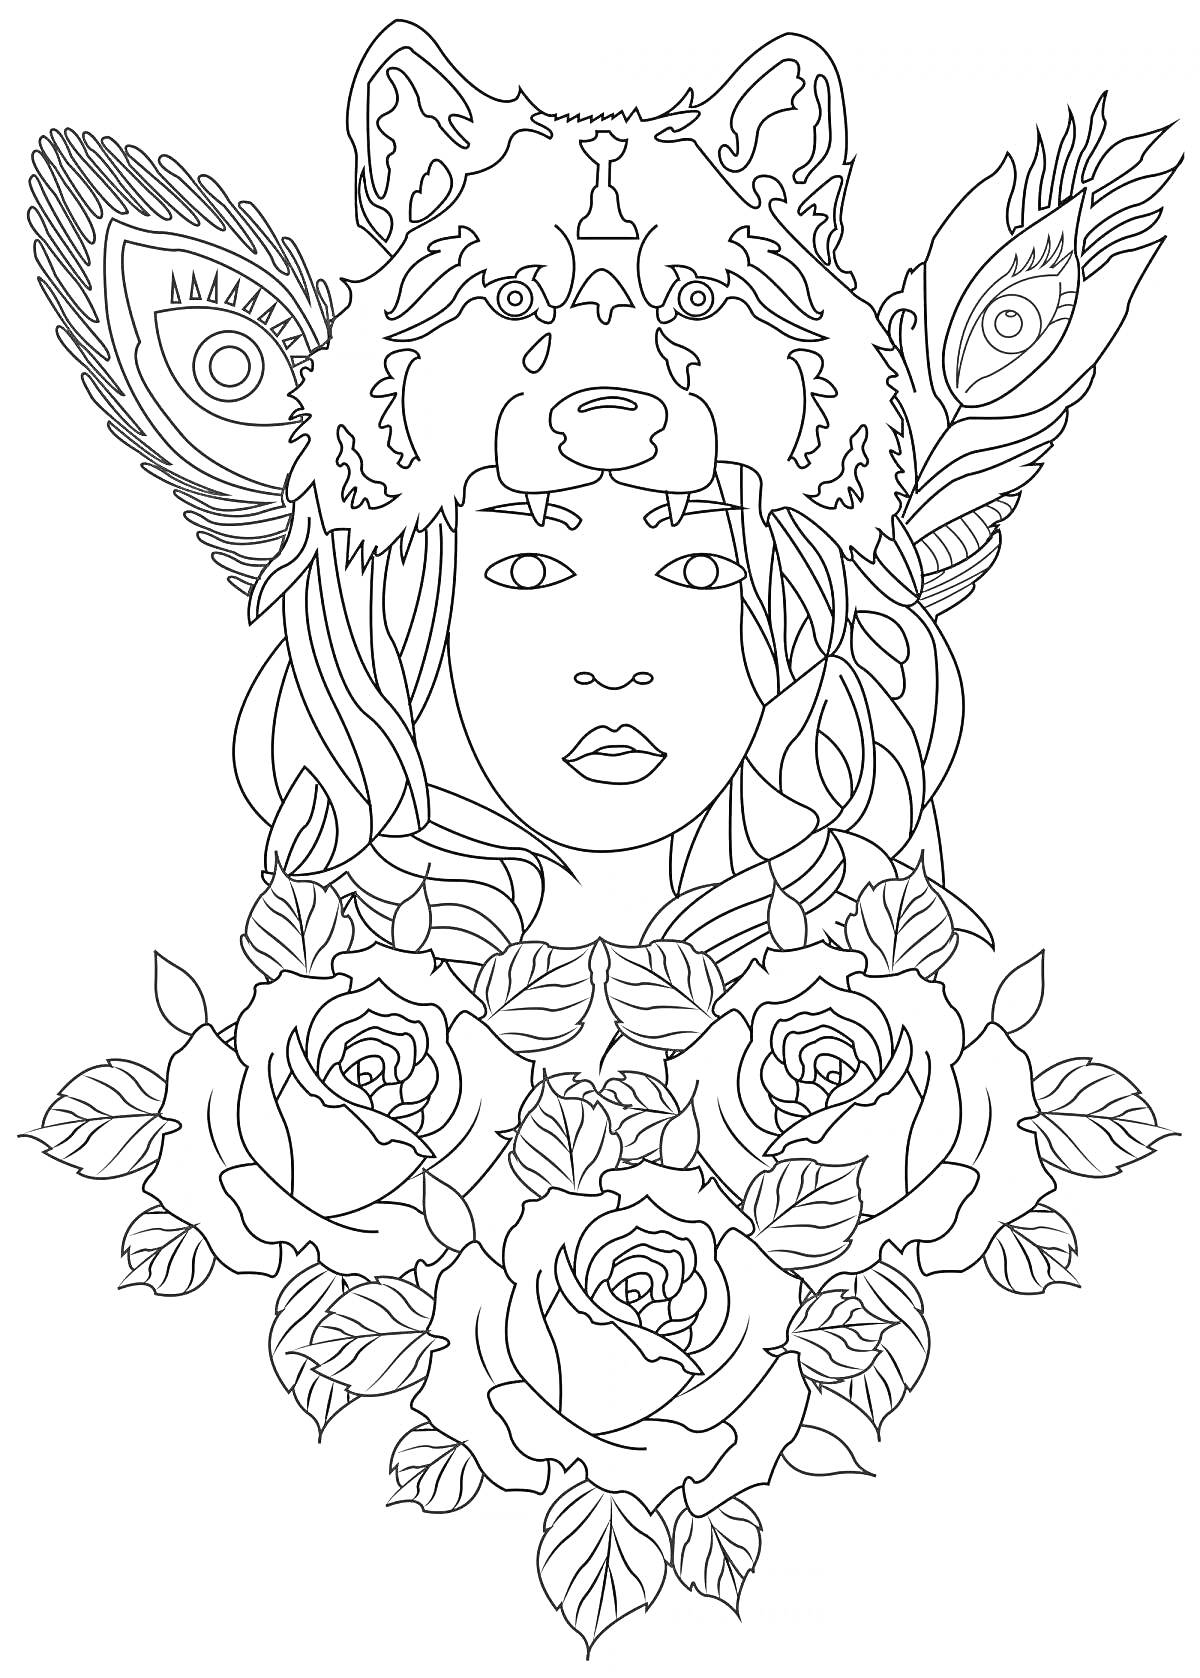 Раскраска Девушка в шапке с волком и павлиньими перьями среди цветов роз